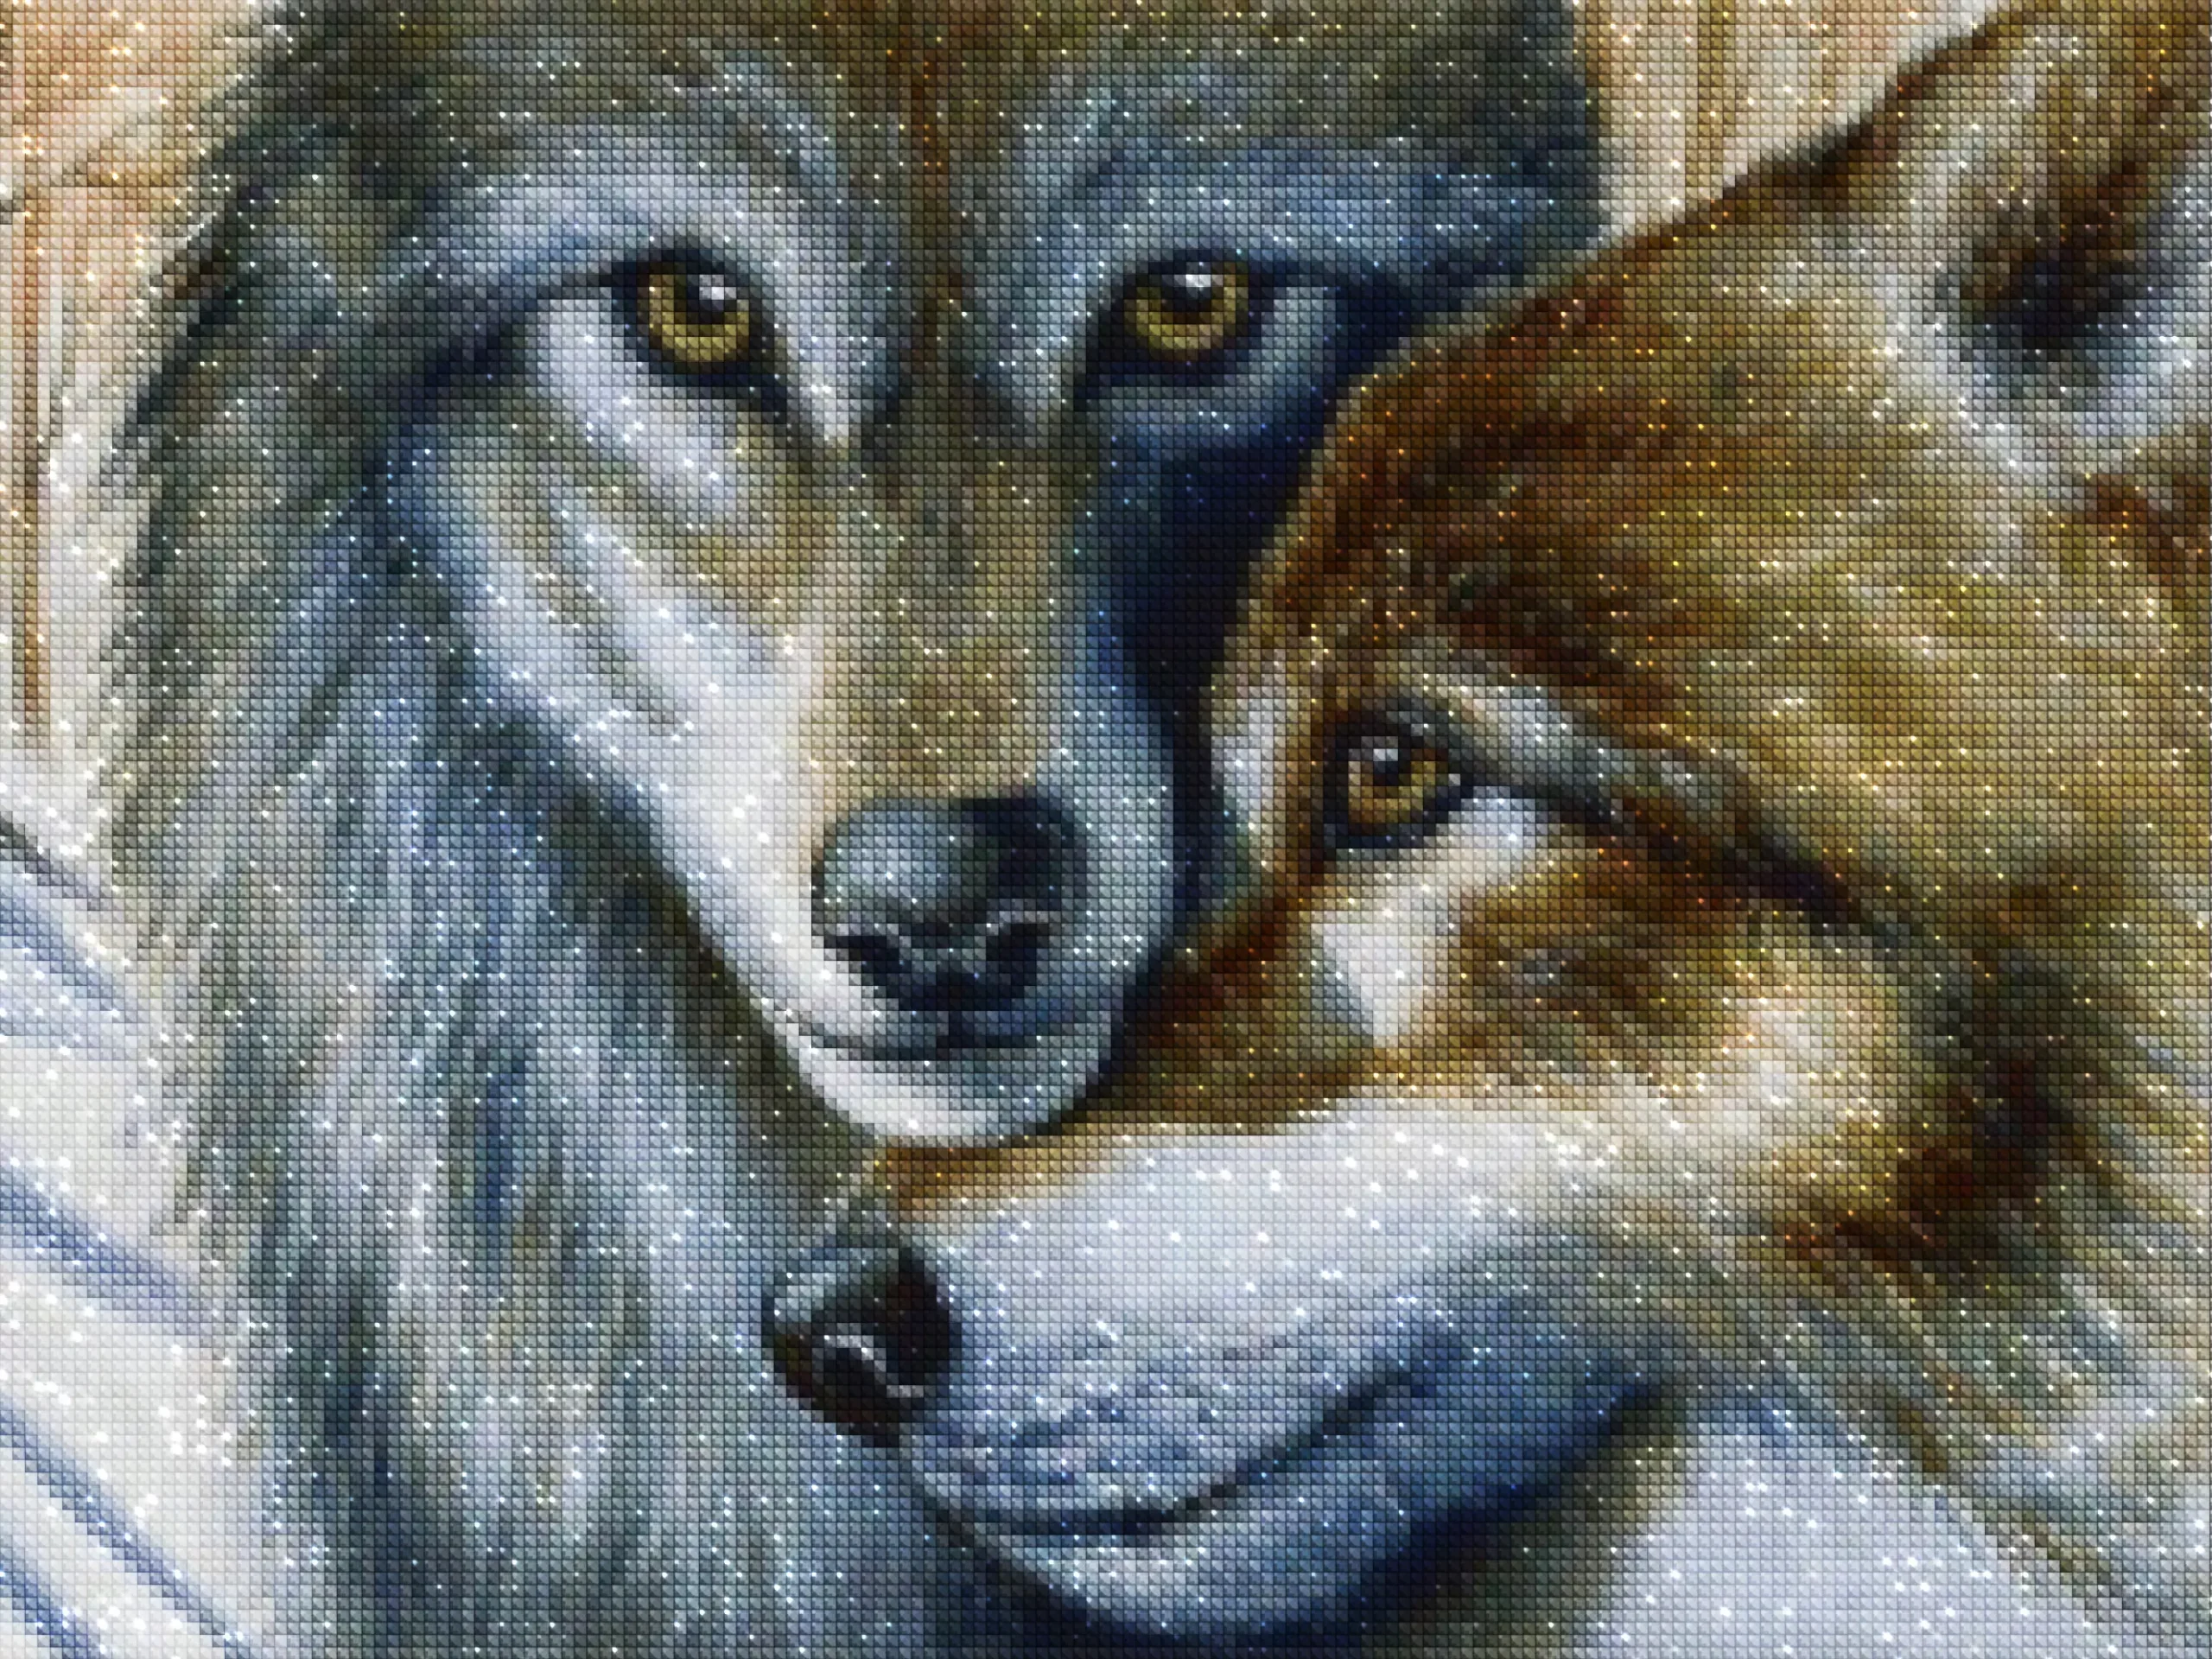 diamonds-wizard-diamond-painting-kits-Animals-Wolf-Wild Wolves-diamonds.webp